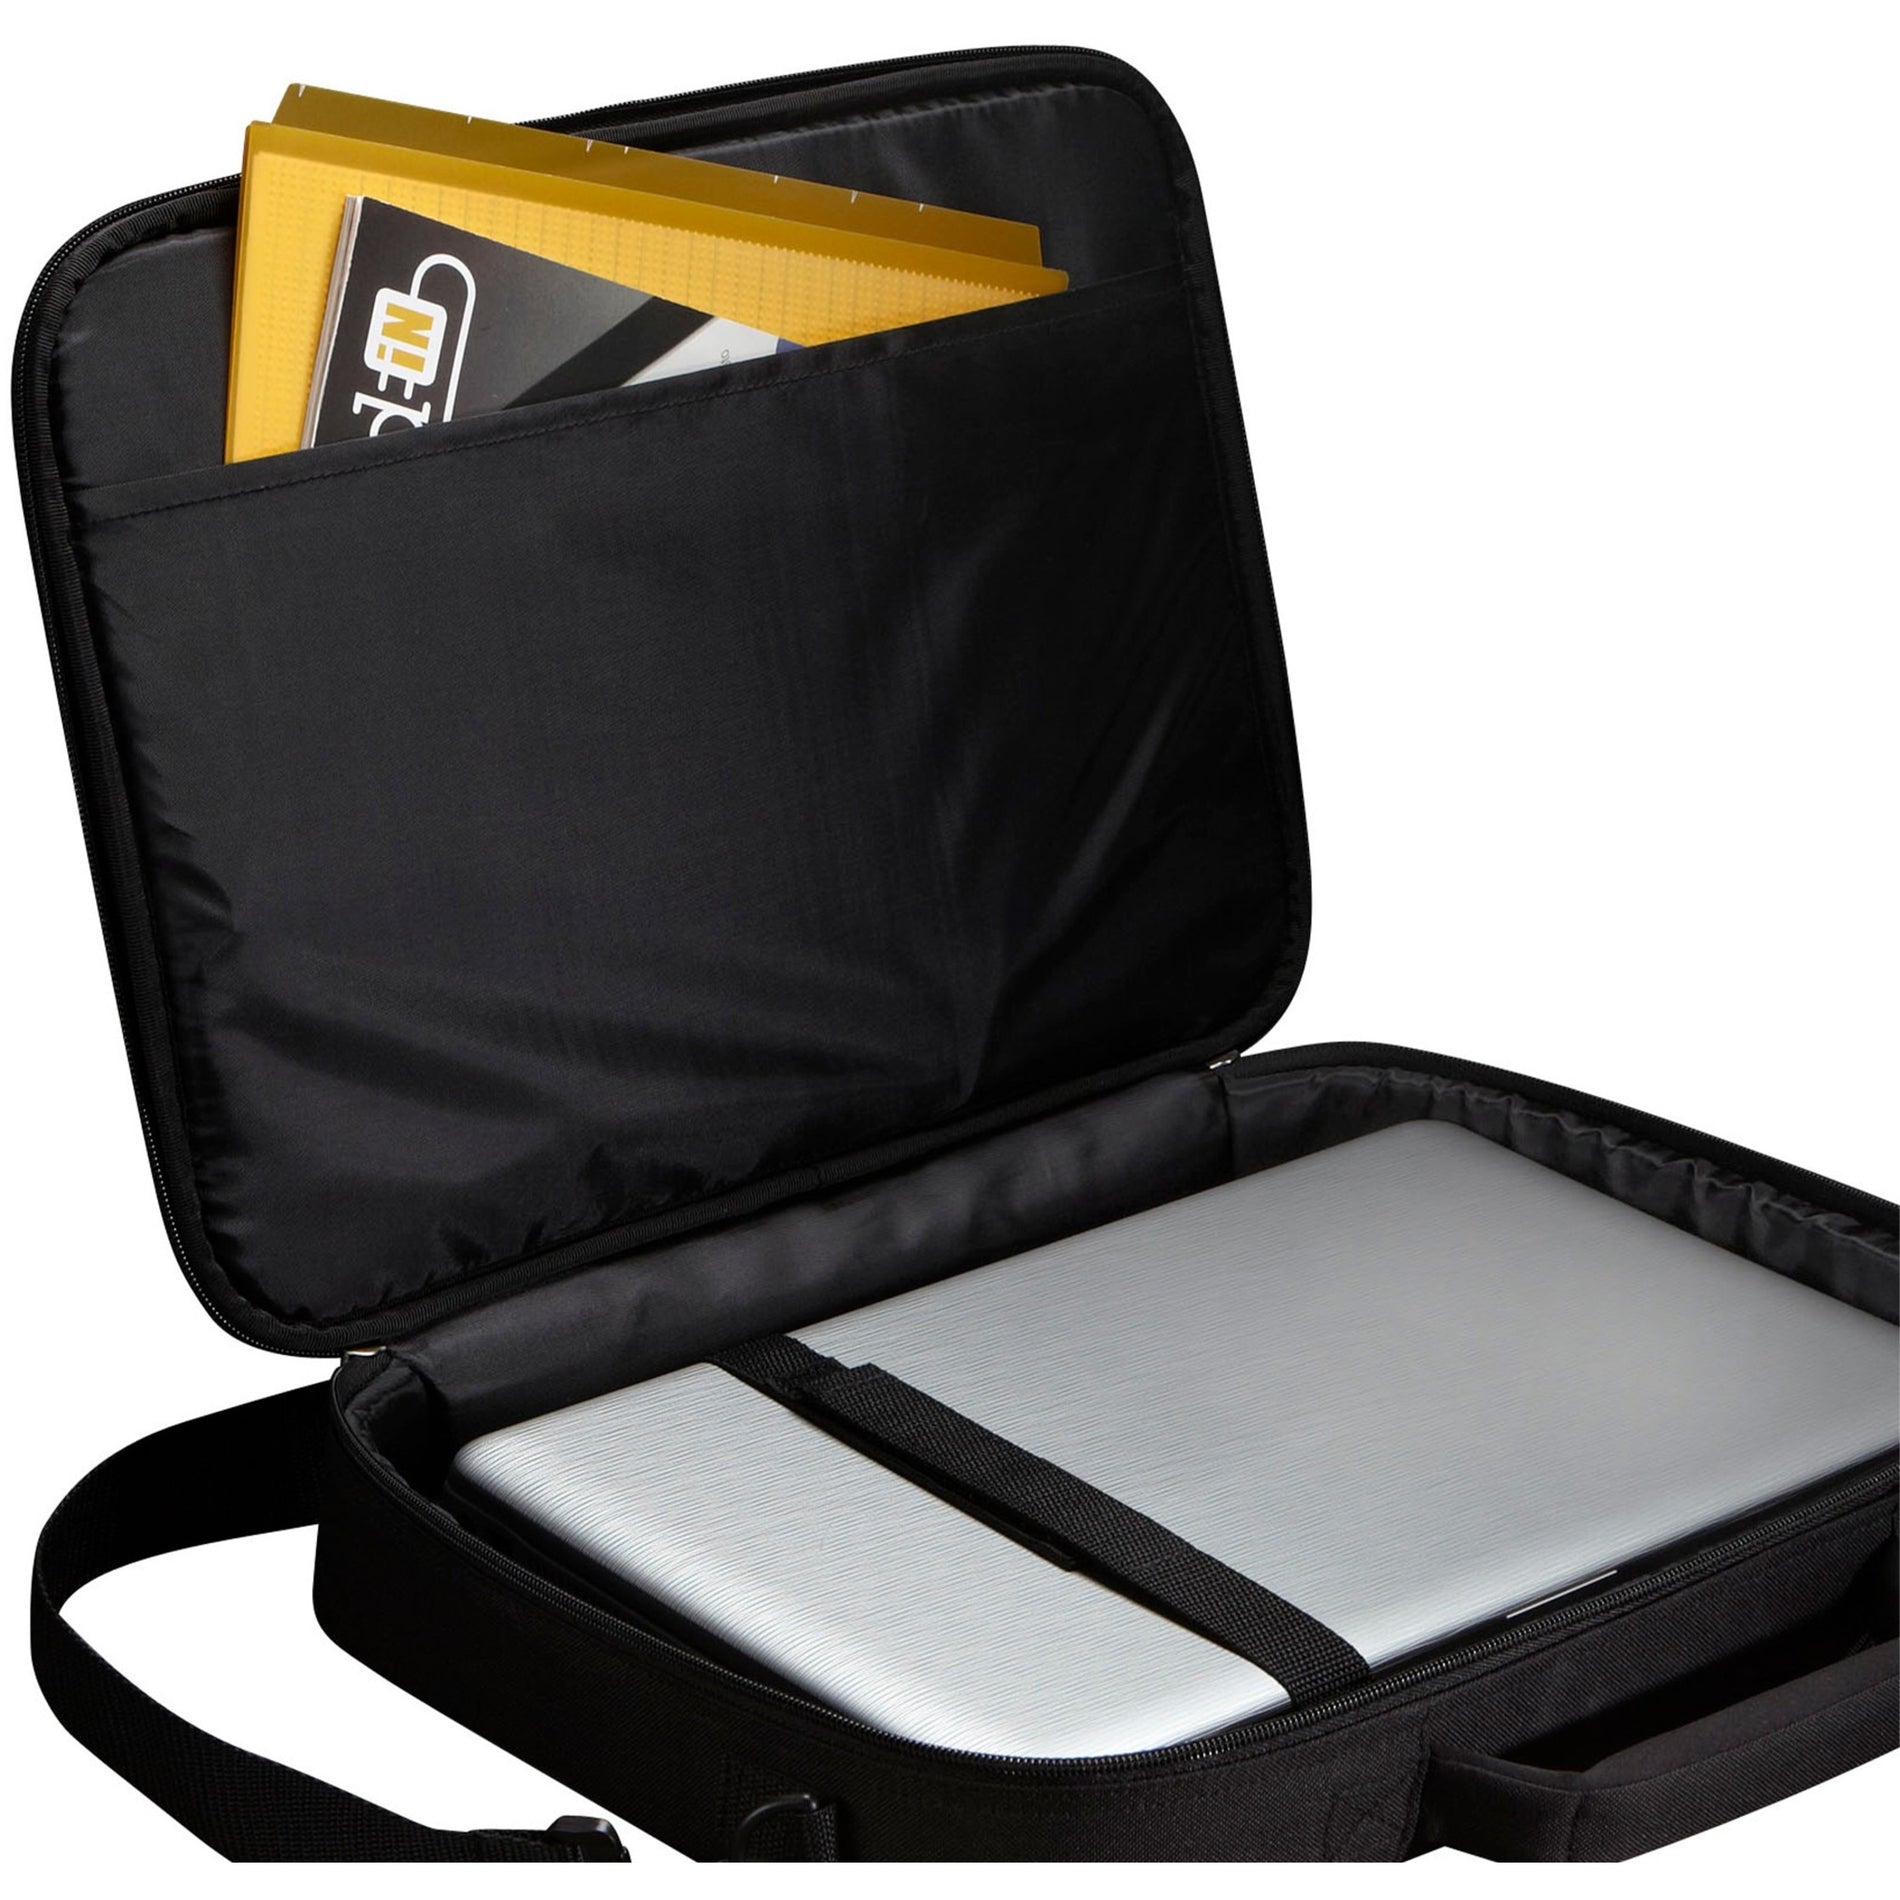 Case Logic 3201491 VNCI-215 15.6" حقيبة حاسوب محمولة، أسود، مقبض، بوليستر العلامة التجارية: كيس منطقة ترجمة اسم العلامة التجارية: كيس منطقة